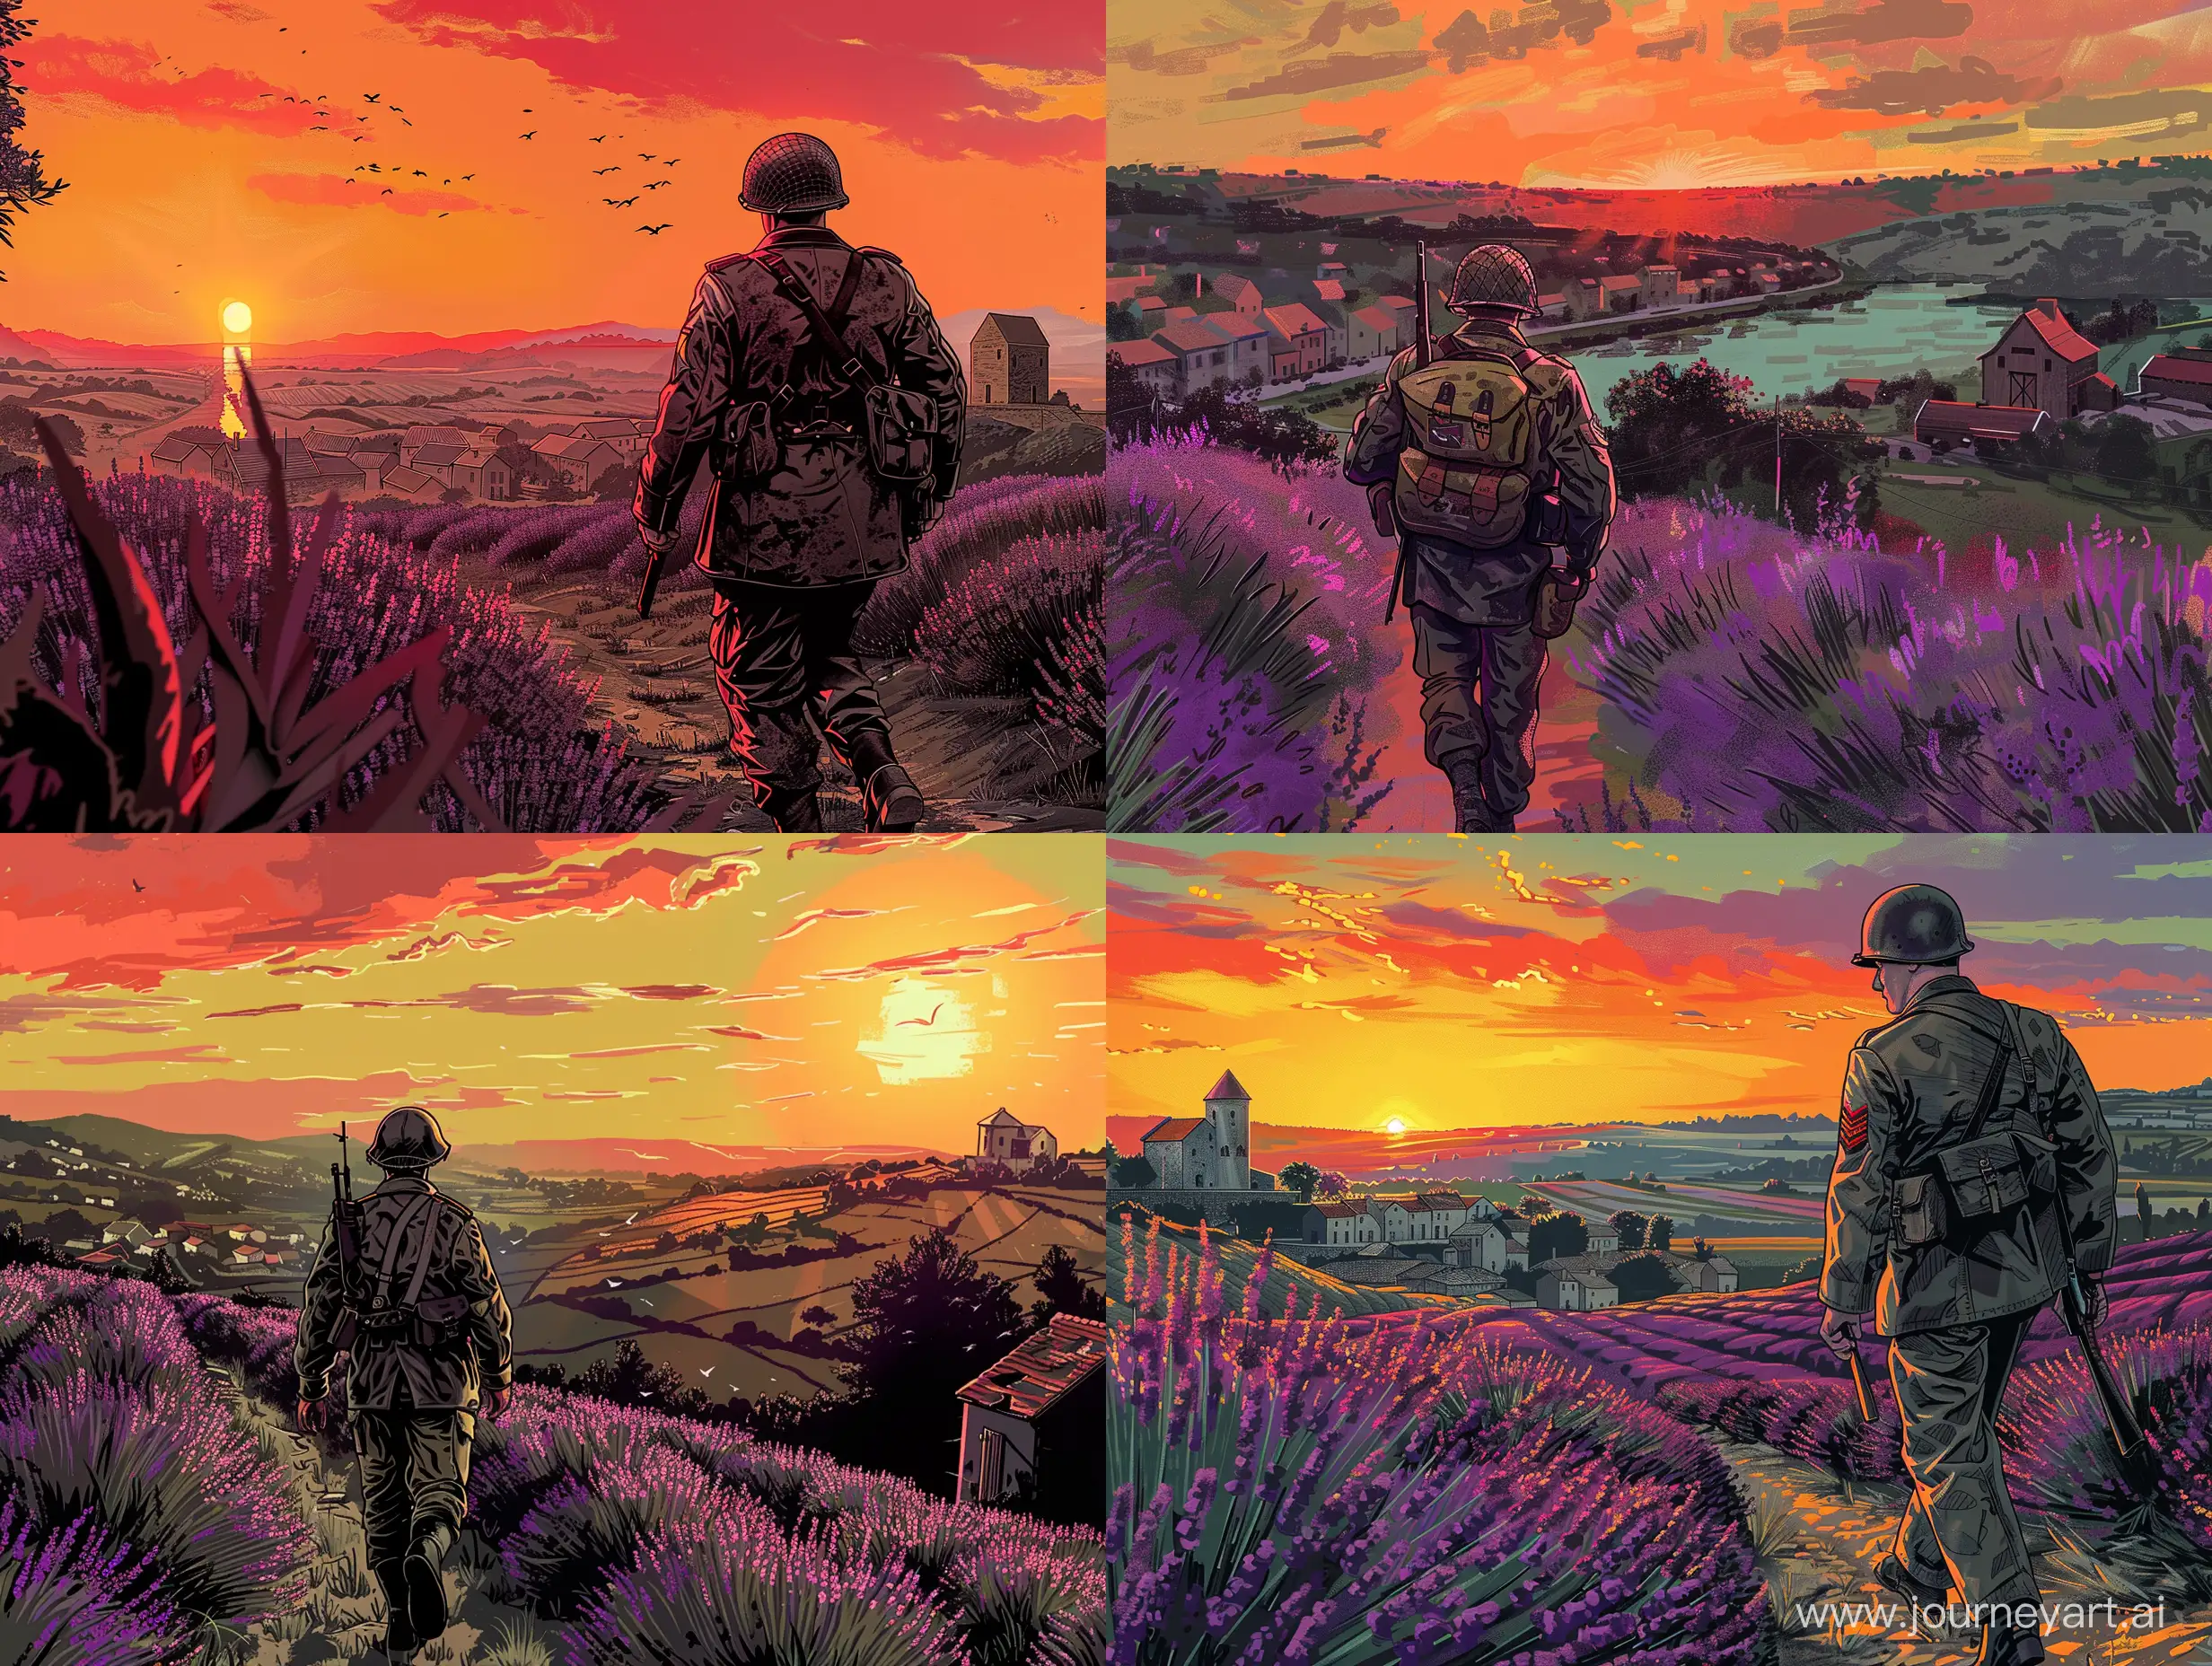 WWII-Soldier-Strolling-through-Lavender-Fields-in-Provence-Sunset-Battlefield-5-Fan-Art